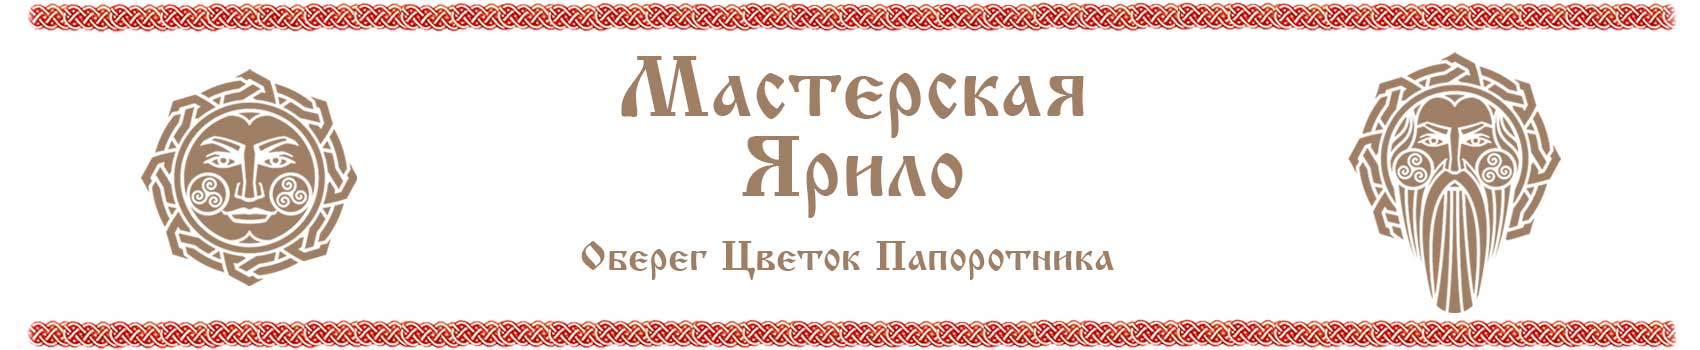 Славянские символы цветок папоротника